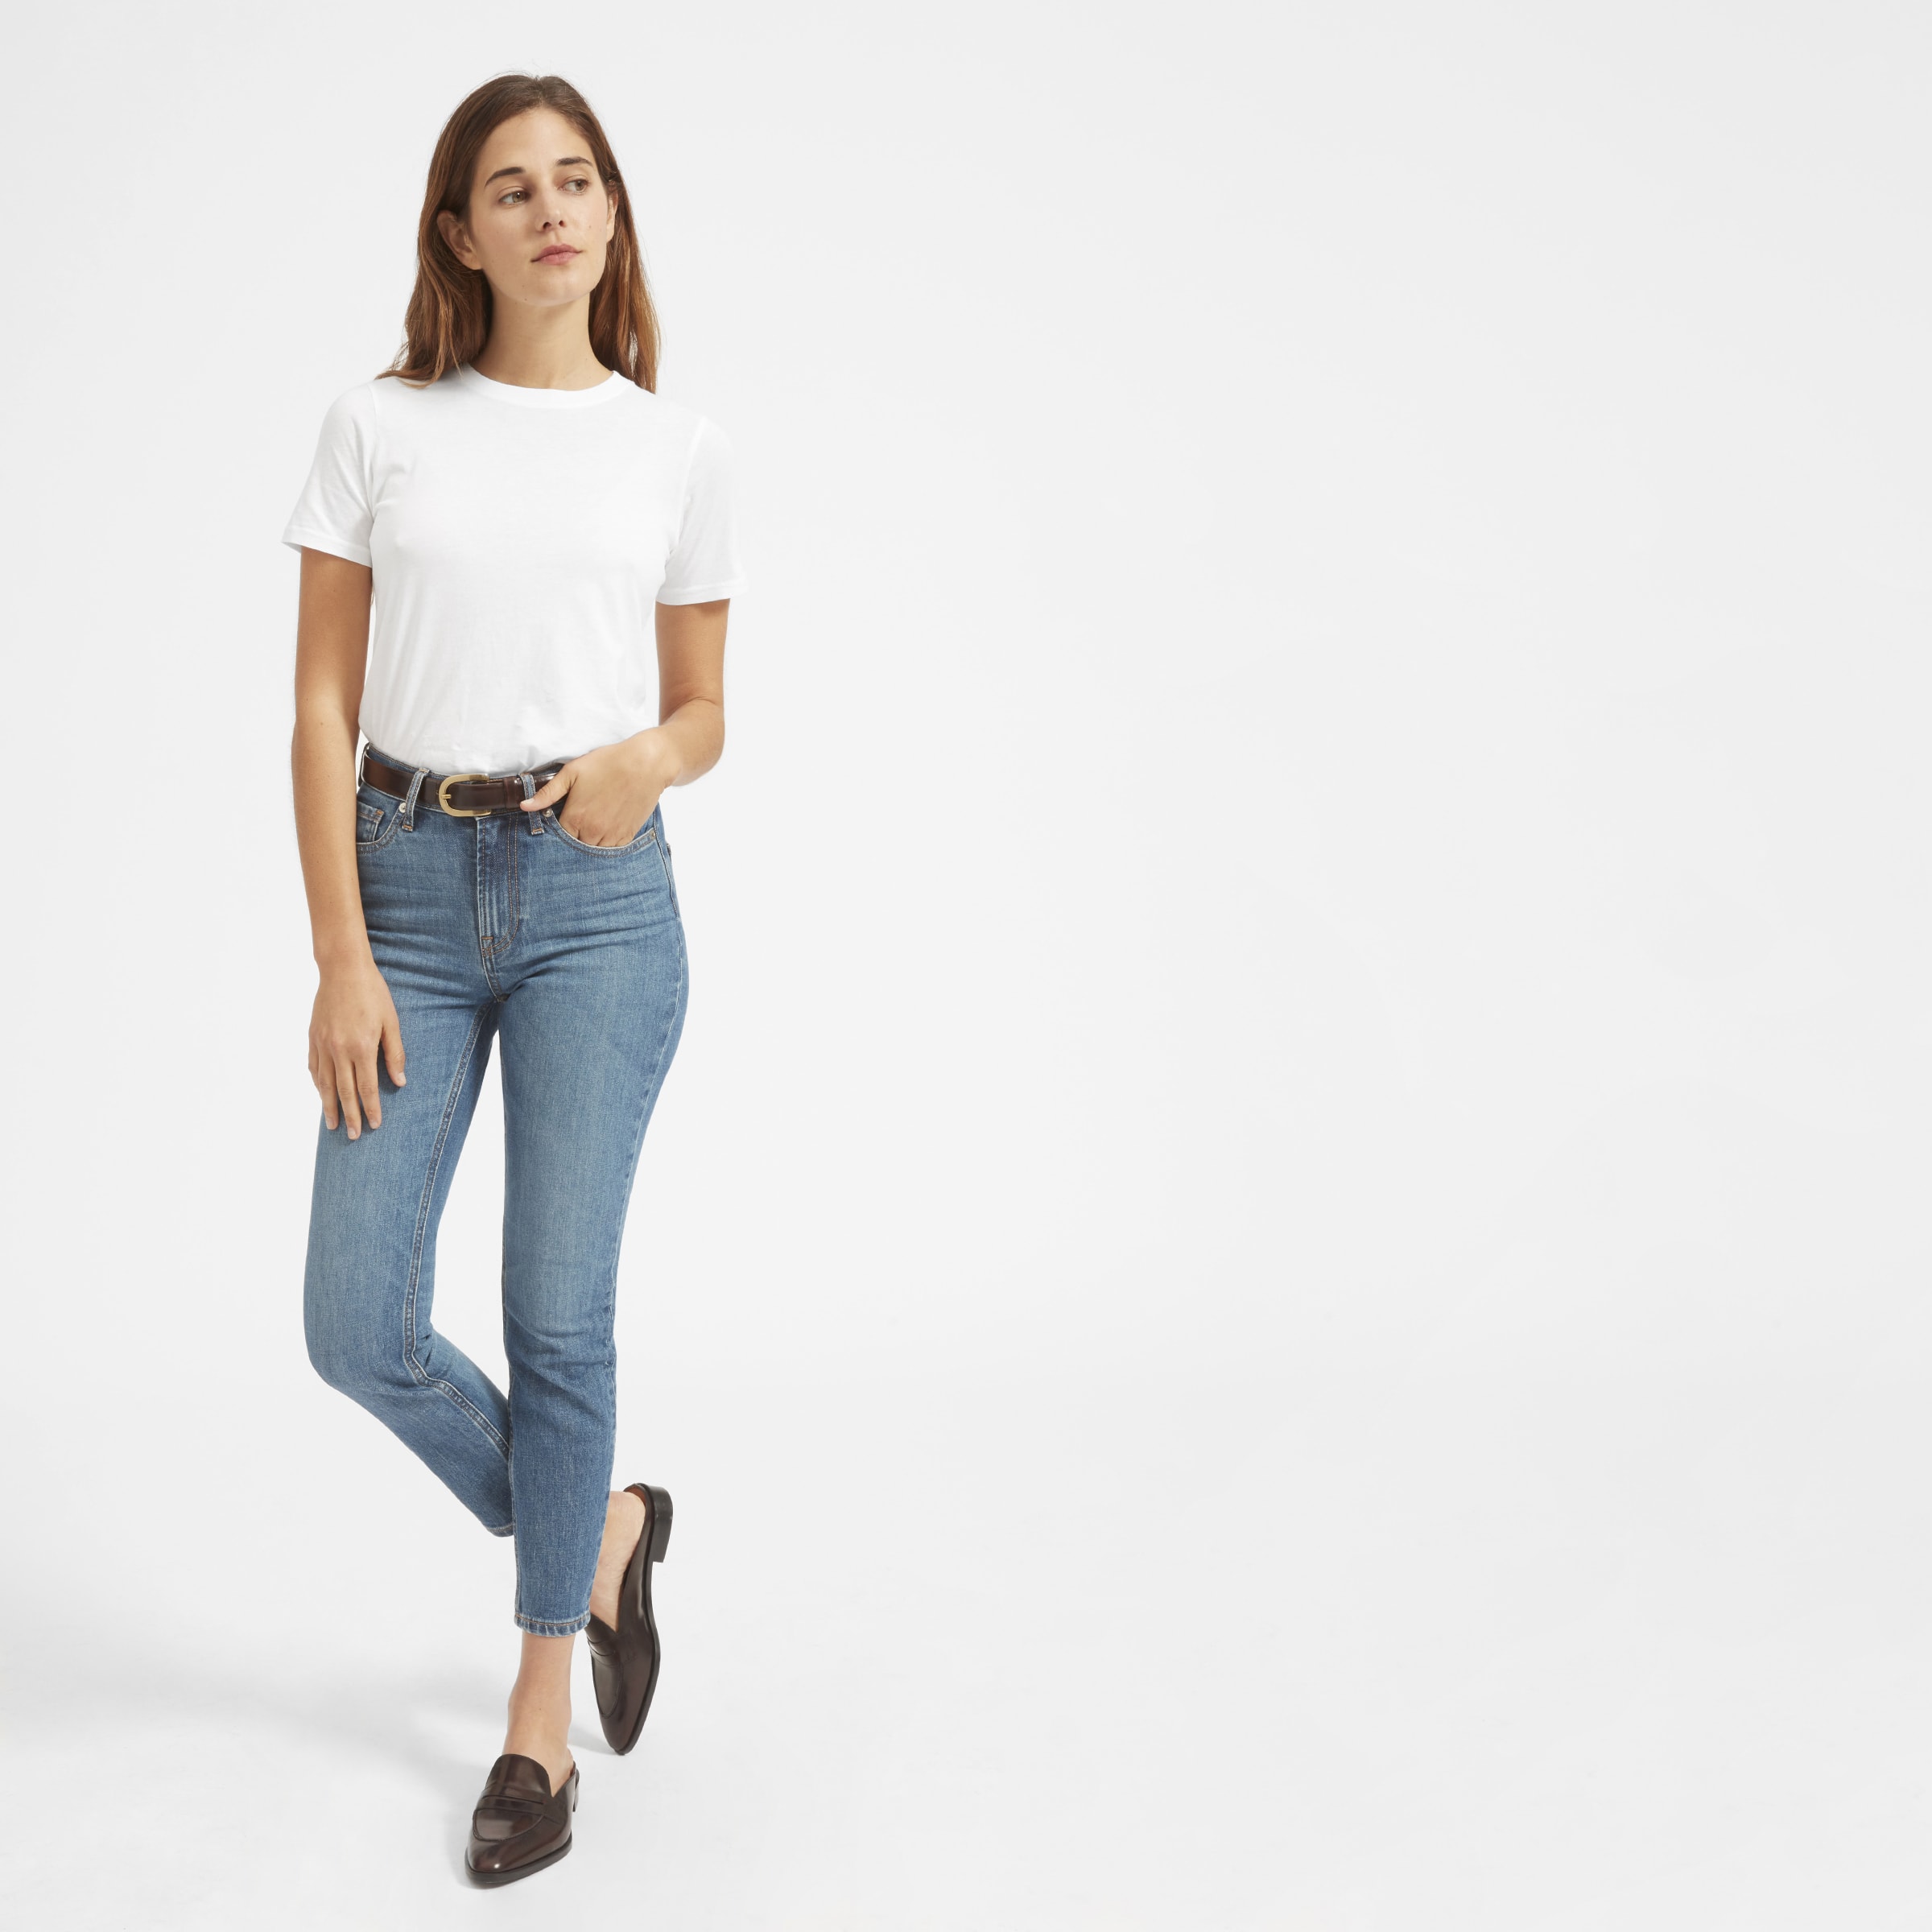 Белая футболка и джинсы женские